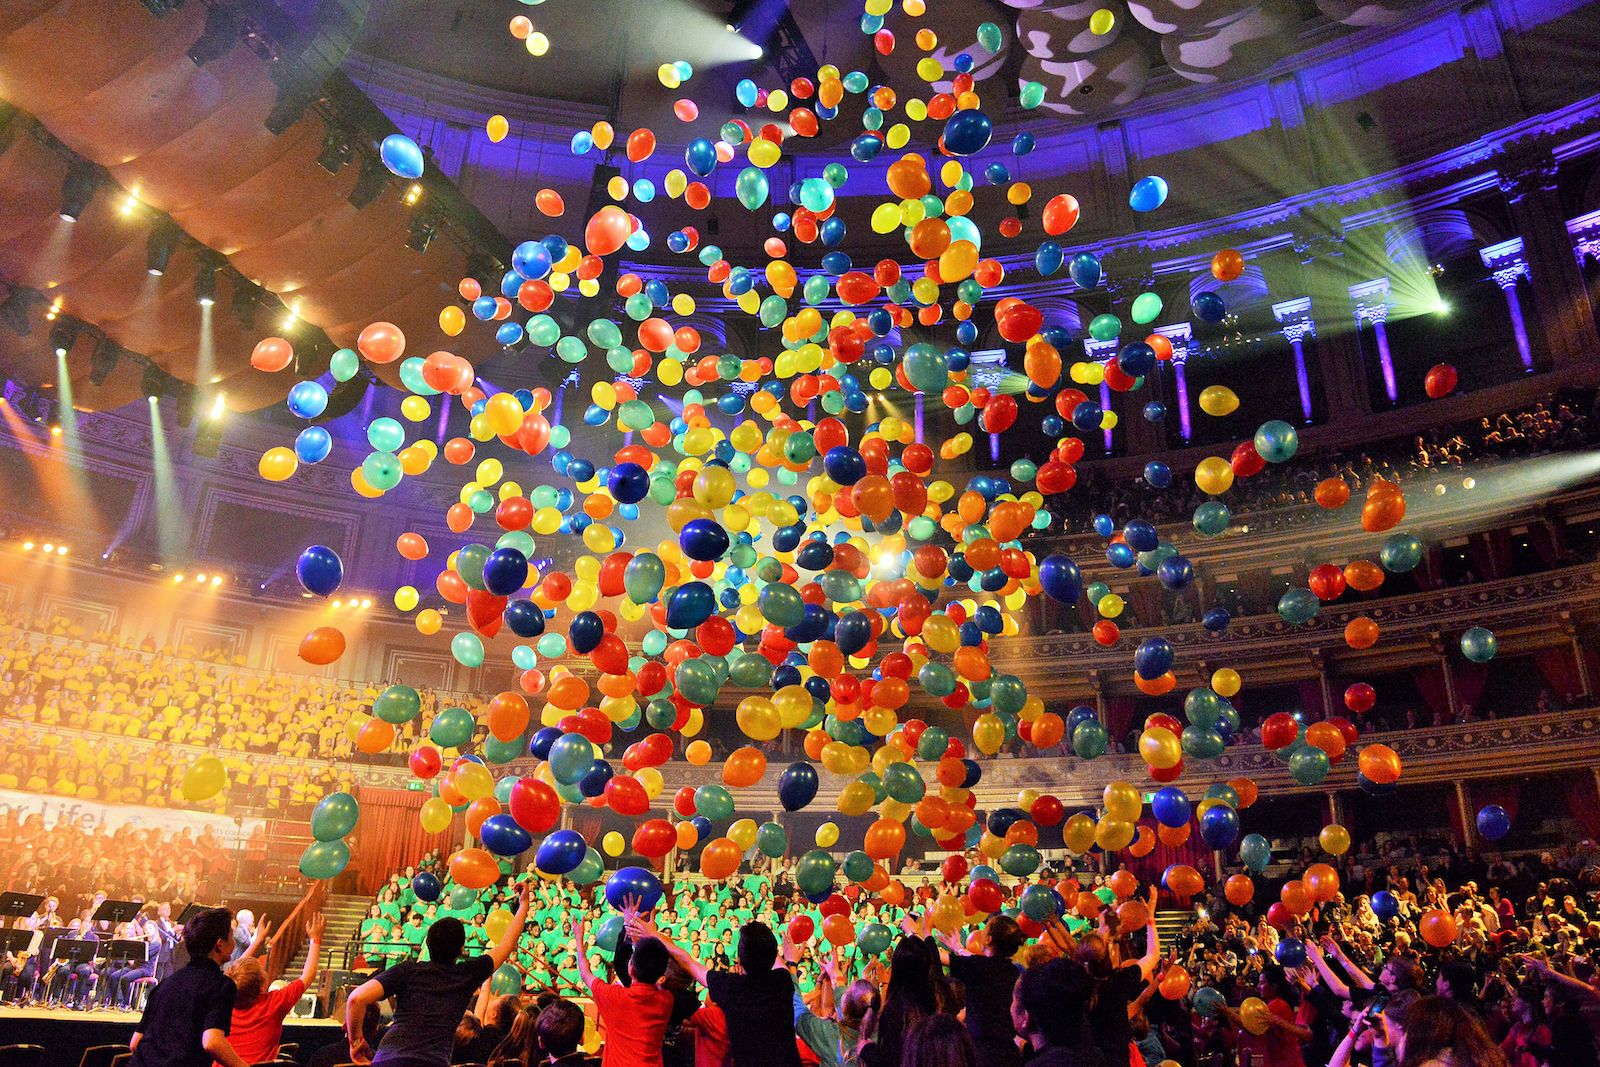 Royal Albert Hall ballons